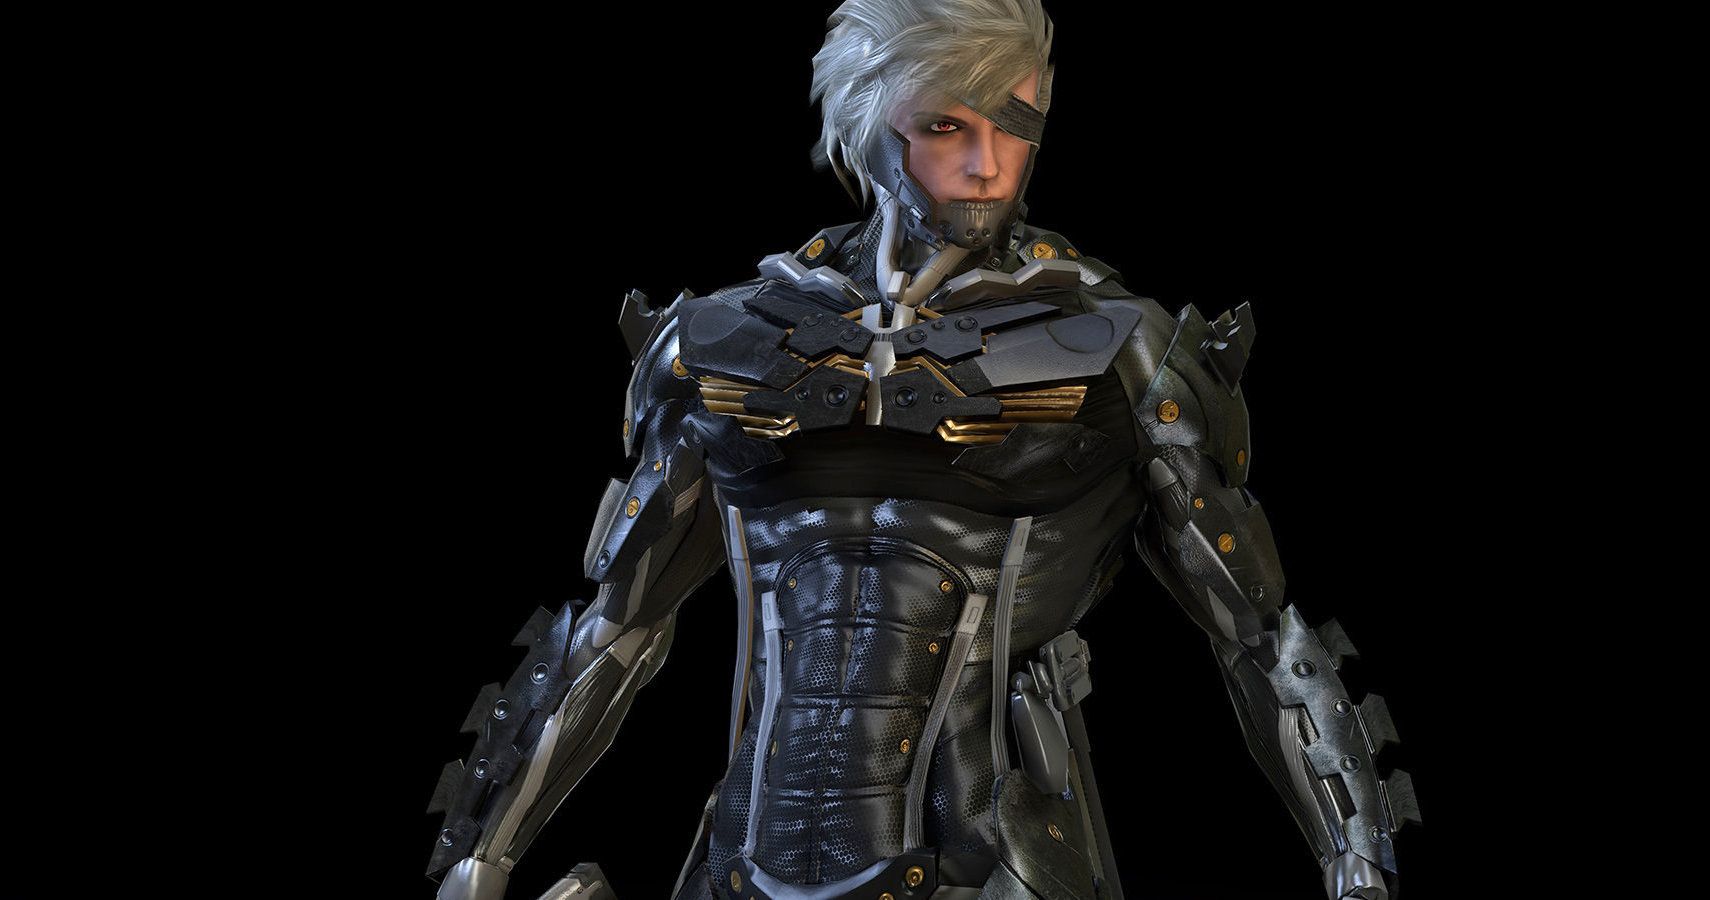 Raiden (Metal Gear) - Wikipedia